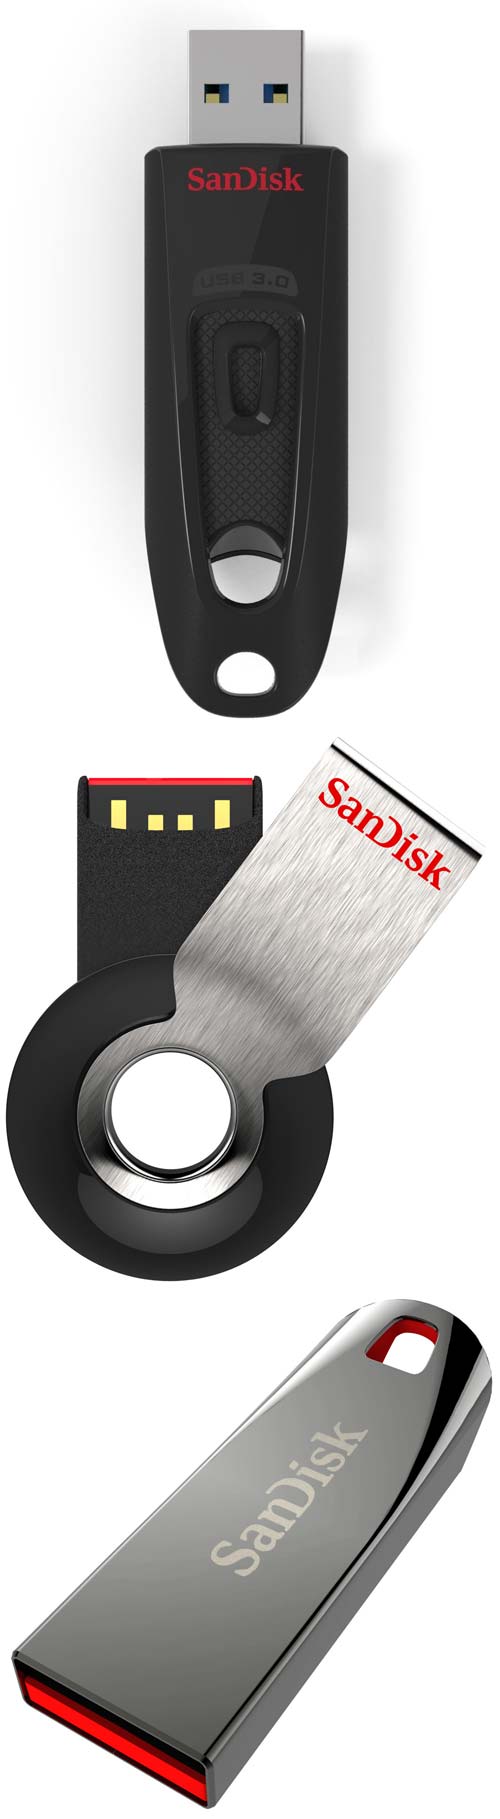 Флешки Ultra USB 3.0, Cruzer Orbit и Cruzer Force от SanDisk 